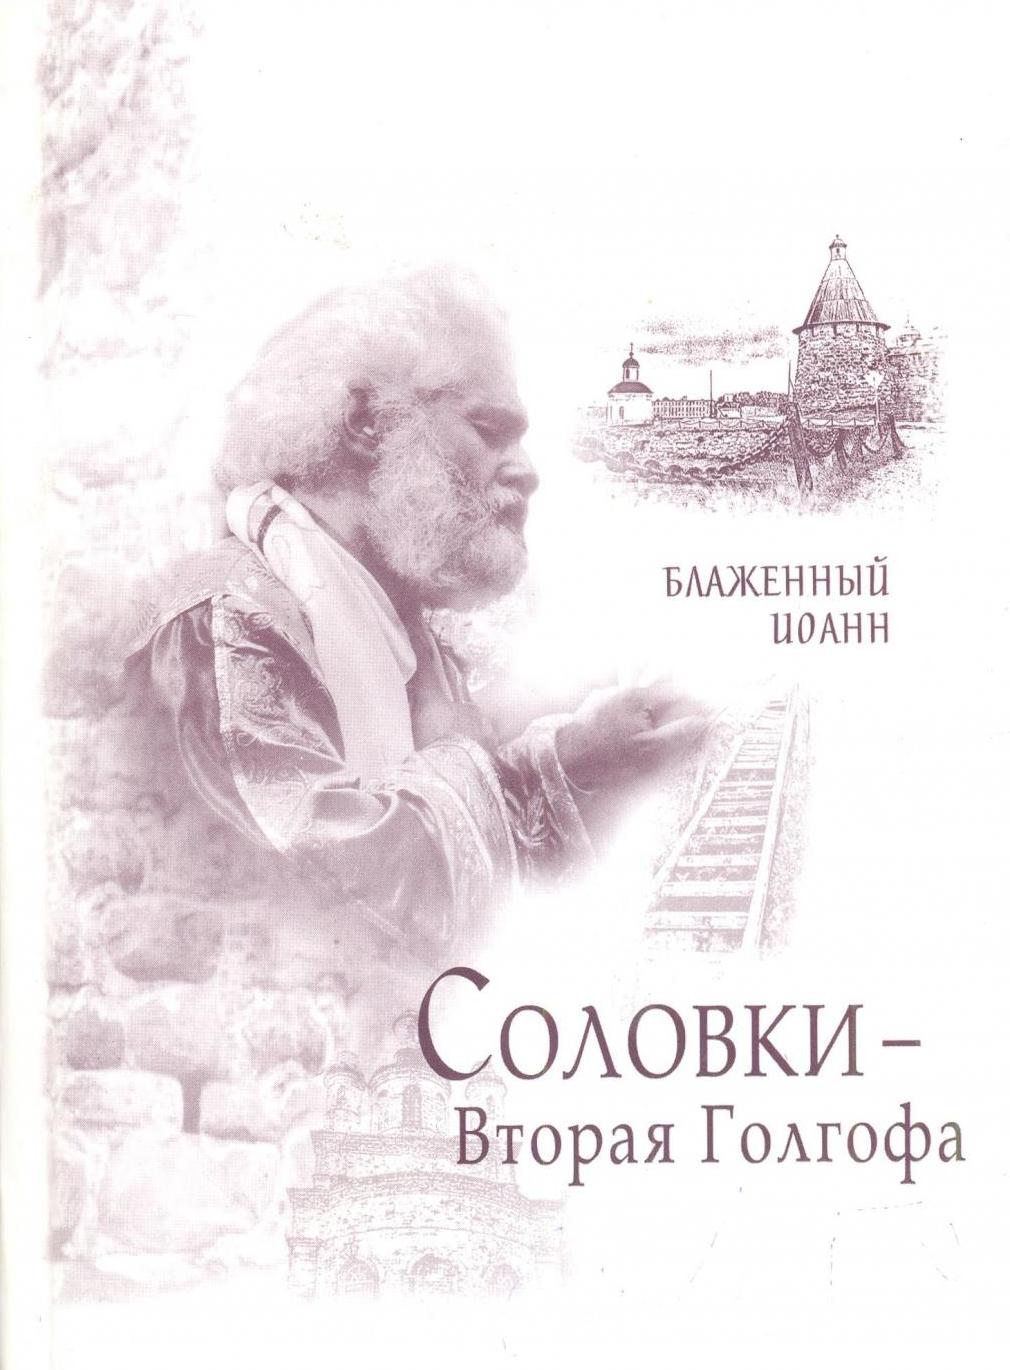 Вероятно, на собранных сектой материалах Иоанн Береславский написал книгу "Соловки - Вторая Голгофа"